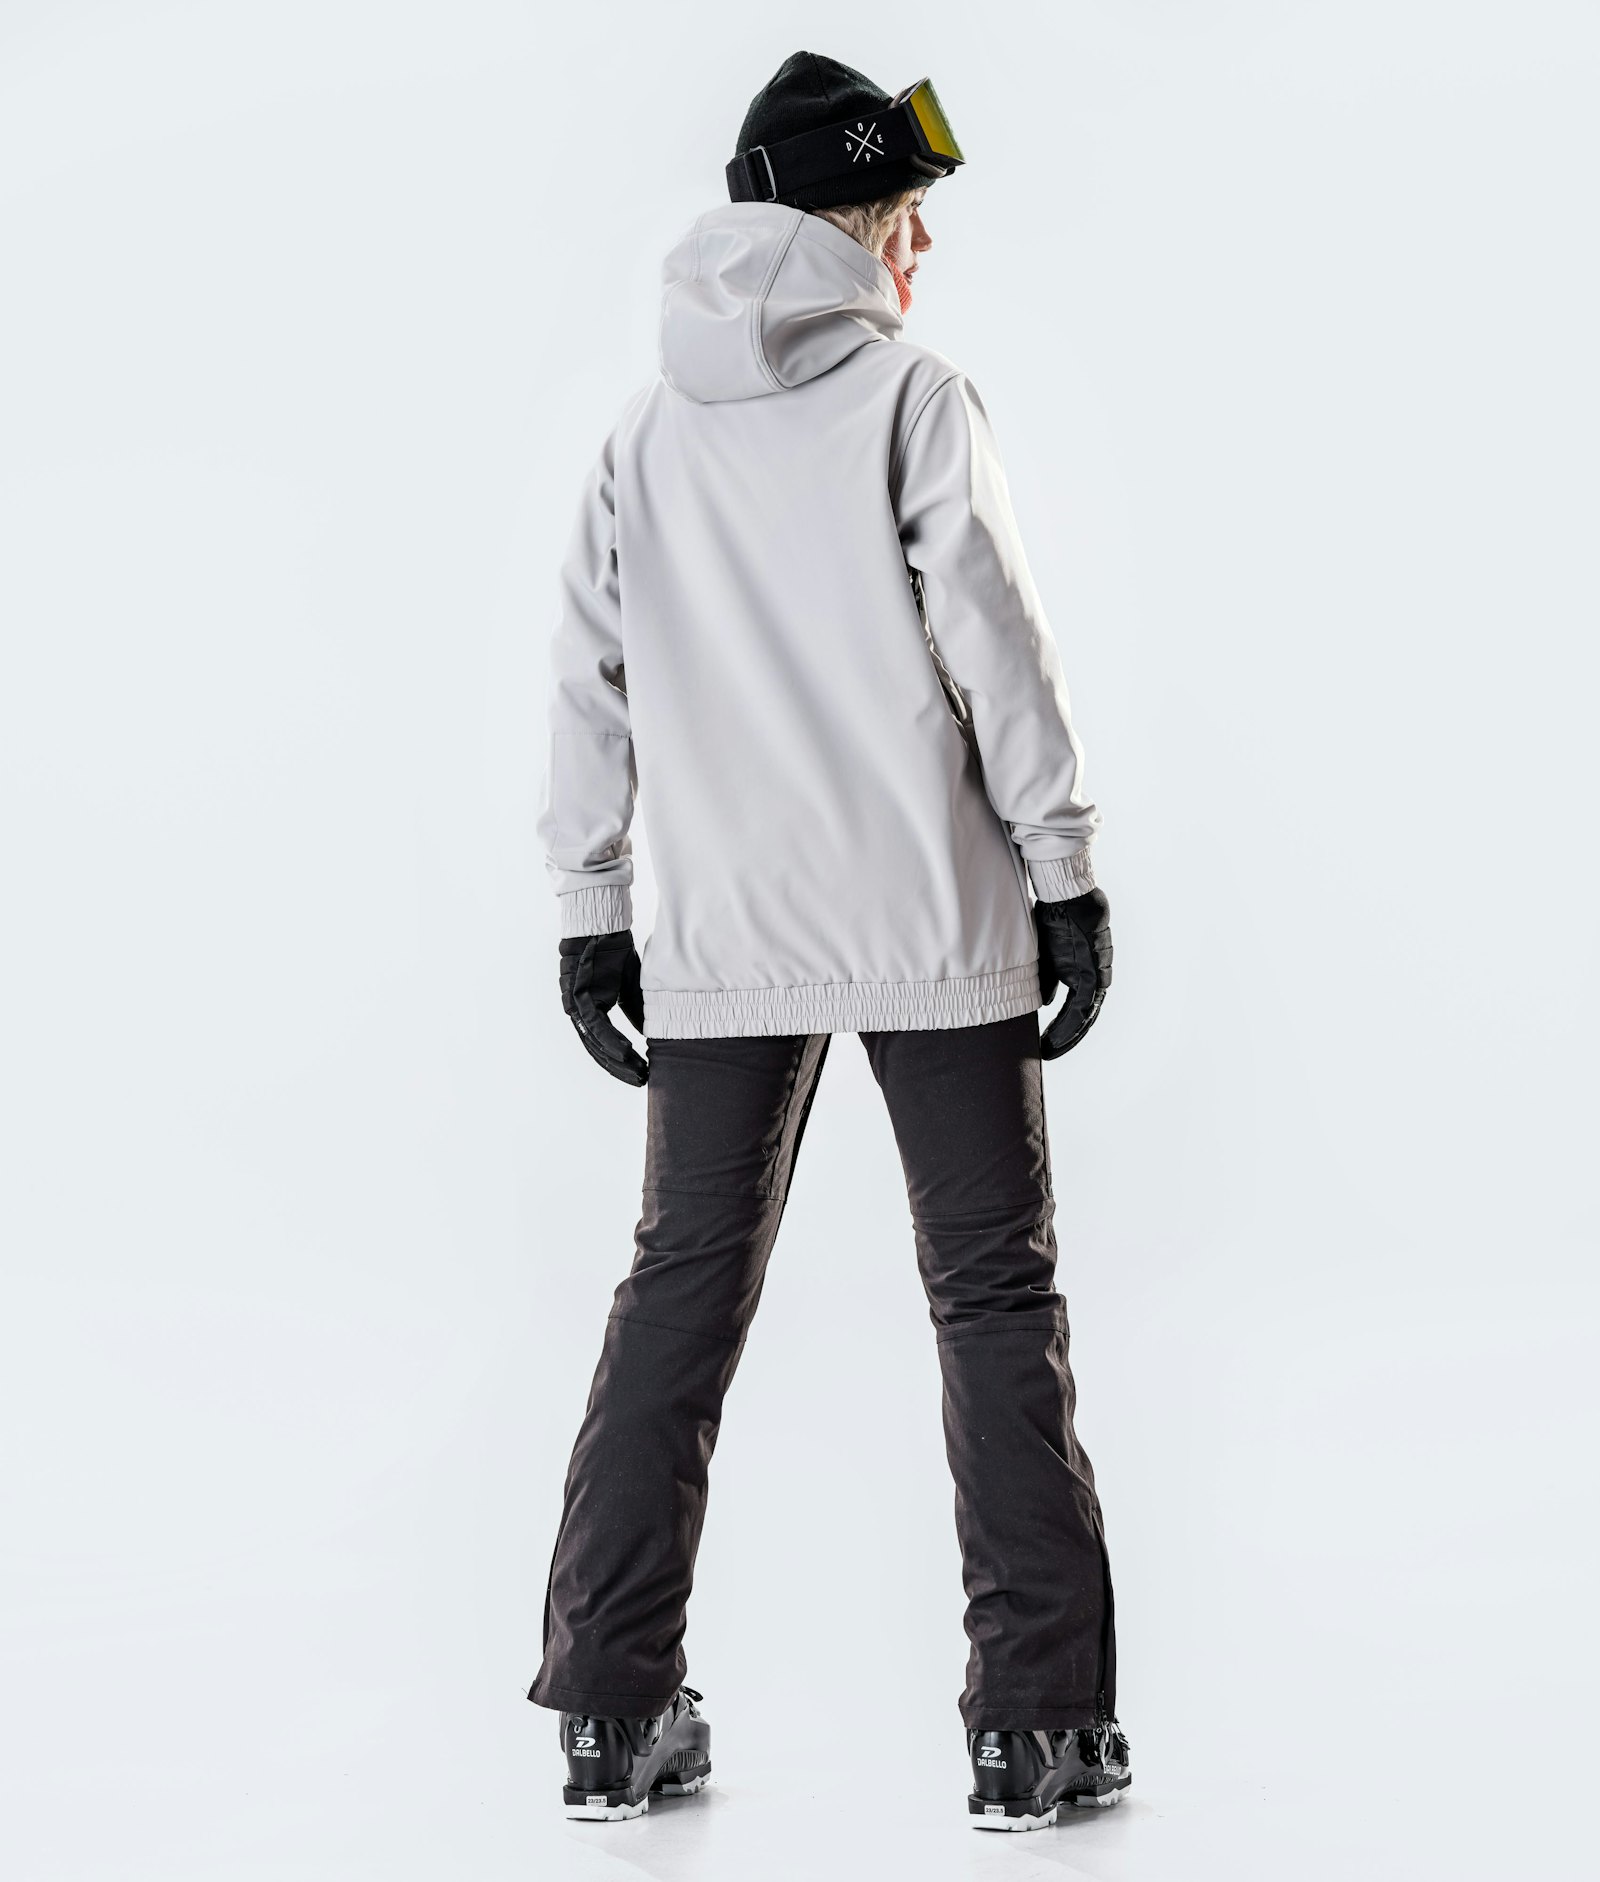 Wylie W 10k Ski Jacket Women Capital Light Grey